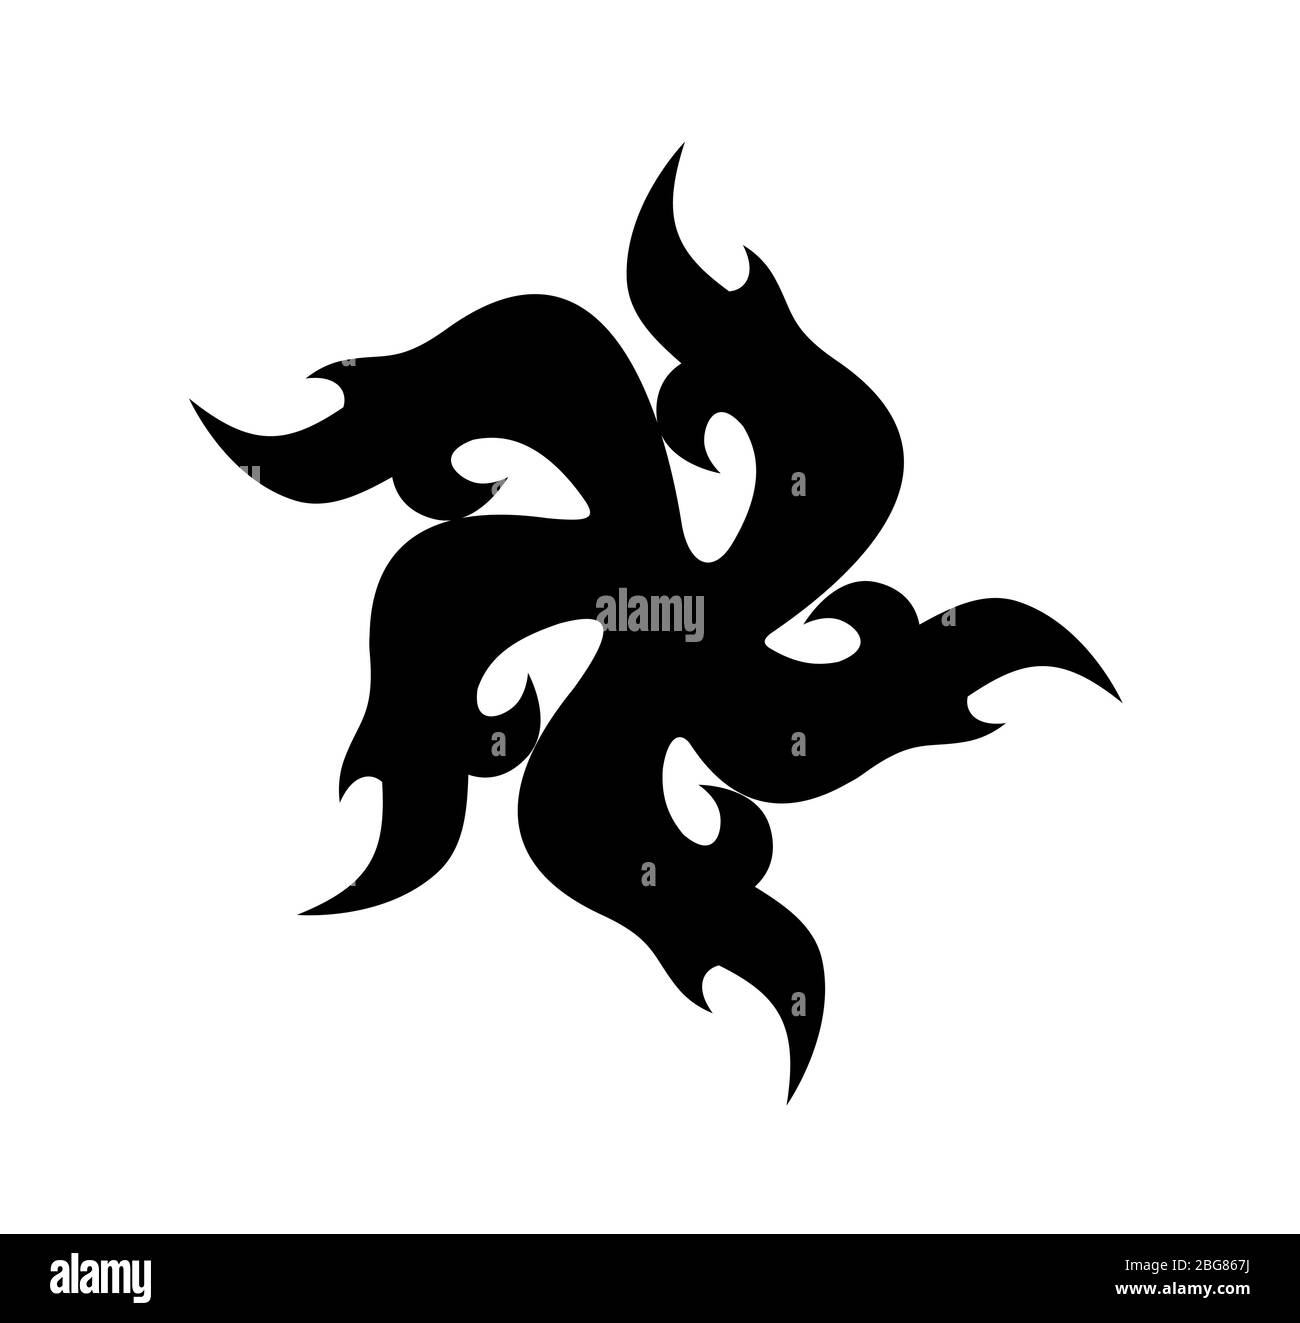 Tattoo Wirbel Symbol schwarze Farbe isoliert auf weiß. Vektor-Form von Flammen mit fünf Scheitelpunkt - Logo Vorlage von Pagan Folk Ornament Stock Vektor